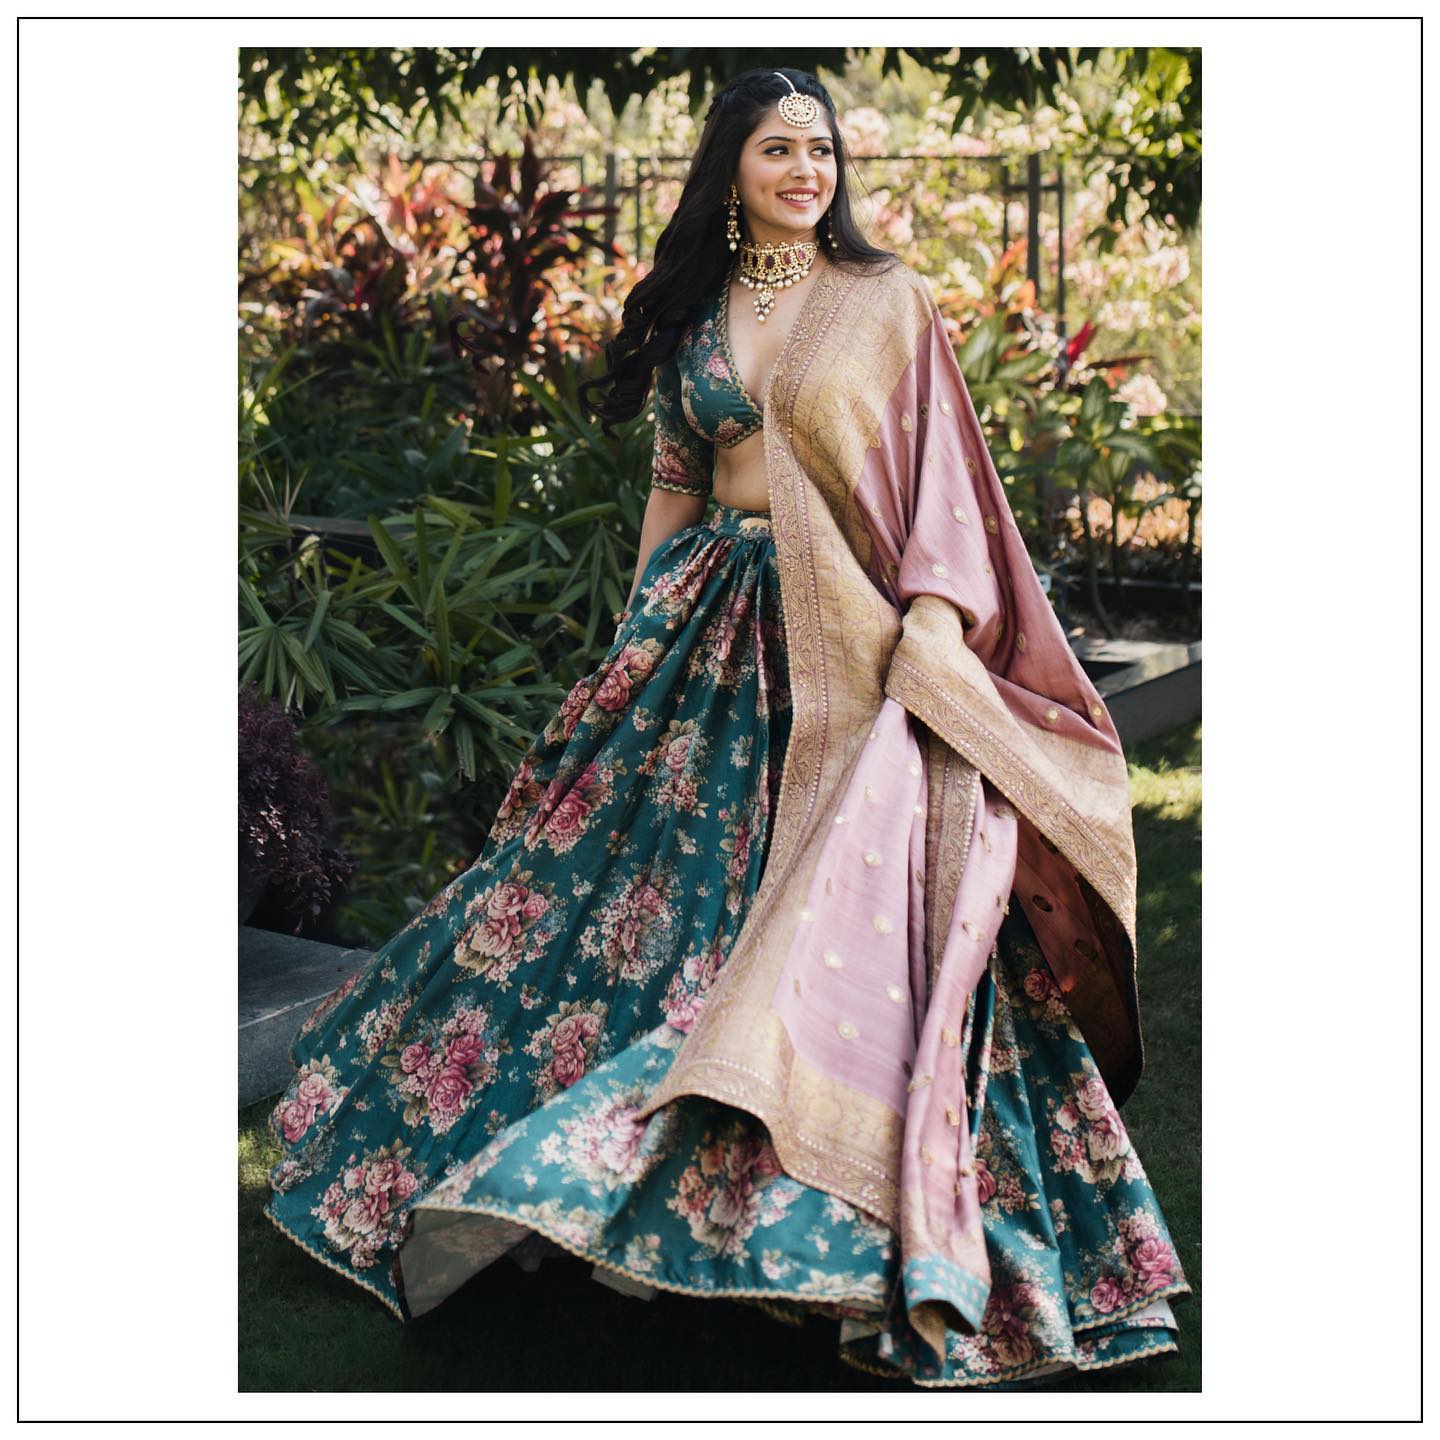 Amazon.com: Fashion_Dream Heavy Bridal Lehenga with Long Top Ready To Wear Designer  Lehenga Choli Sabyasachi Lehenga (Stitch) : Clothing, Shoes & Jewelry